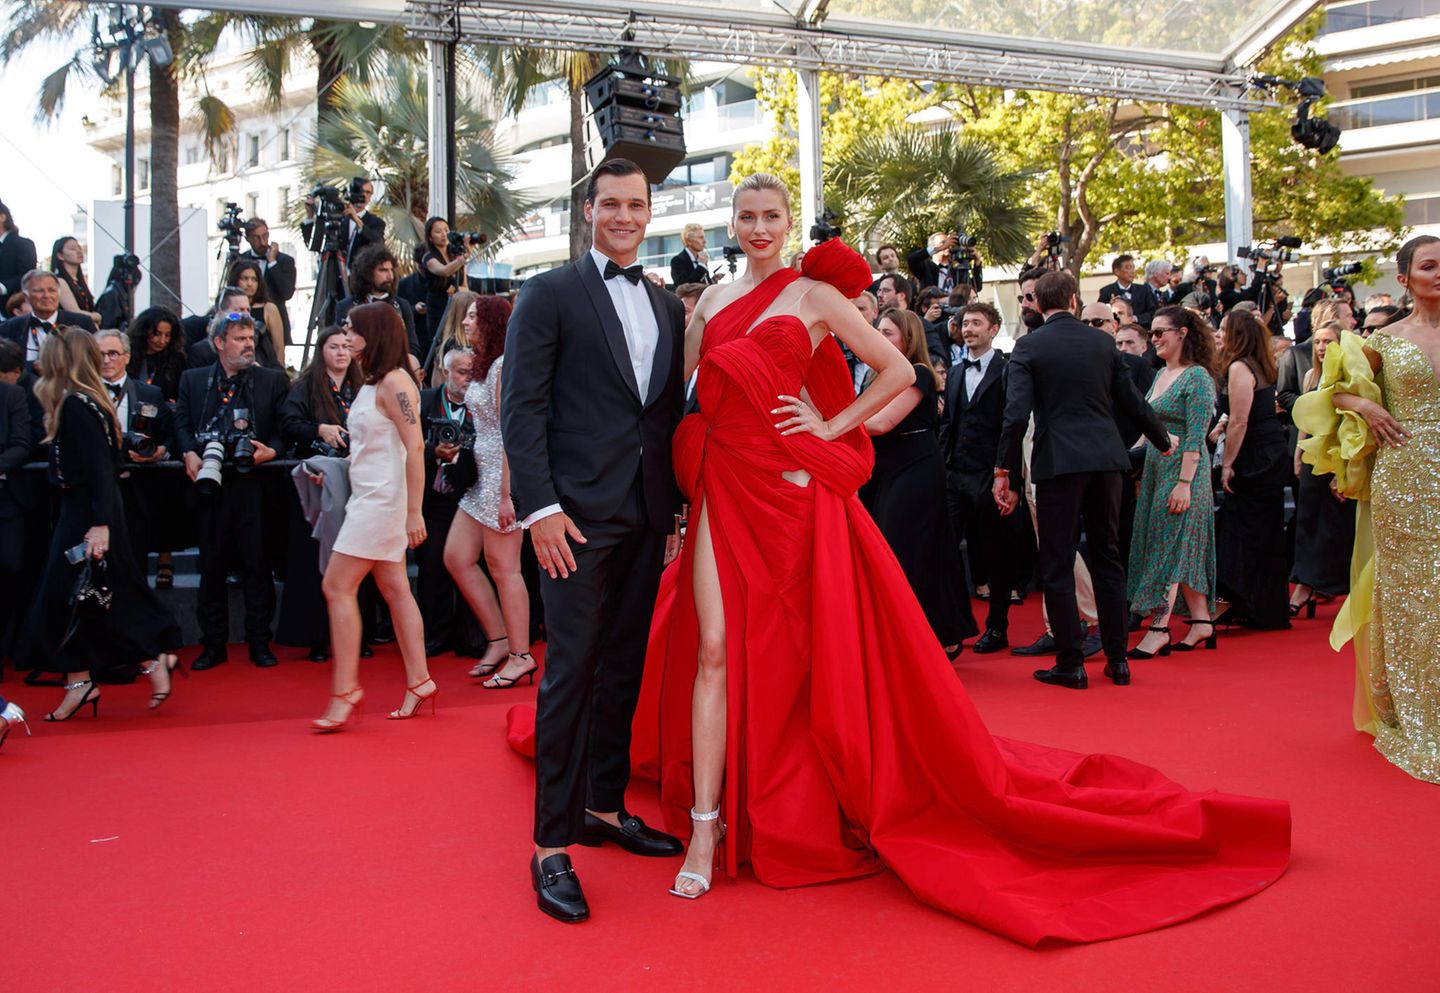 Wincent Weiss und Lena Gercke zeigen sich gemeinsam auf dem roten Teppich bei der Abschlusszeremonie der 77. Internationalen Filmfestspiele in Cannes. Auch wenn das Topmodel im Couture-Kleid von Ziad Nakad der größere Blickfang ist, macht auch der Musiker im Smoking was her.